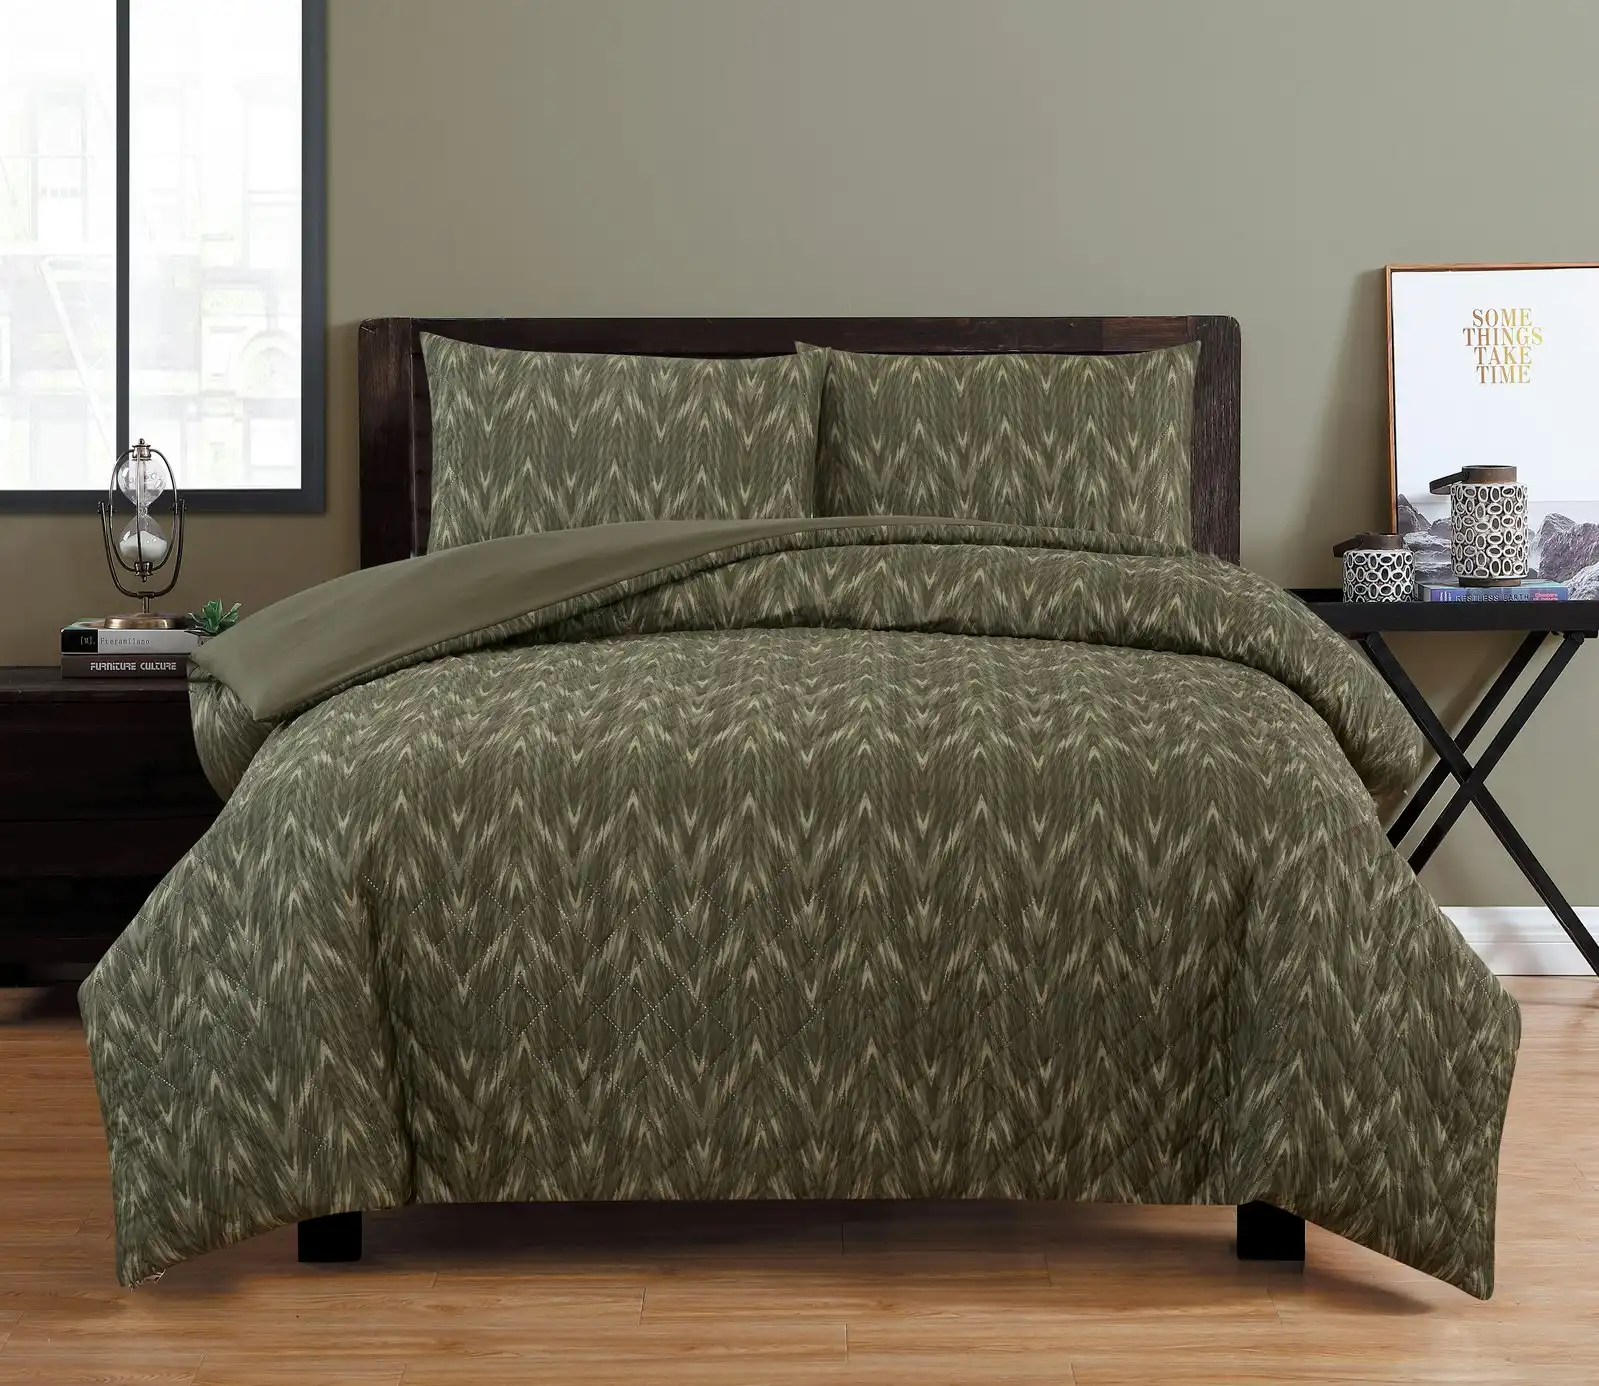 Ardor Boudoir Oak Embossed Queen Bed Quilt Cover/Pillowcases Home Bedding Khaki